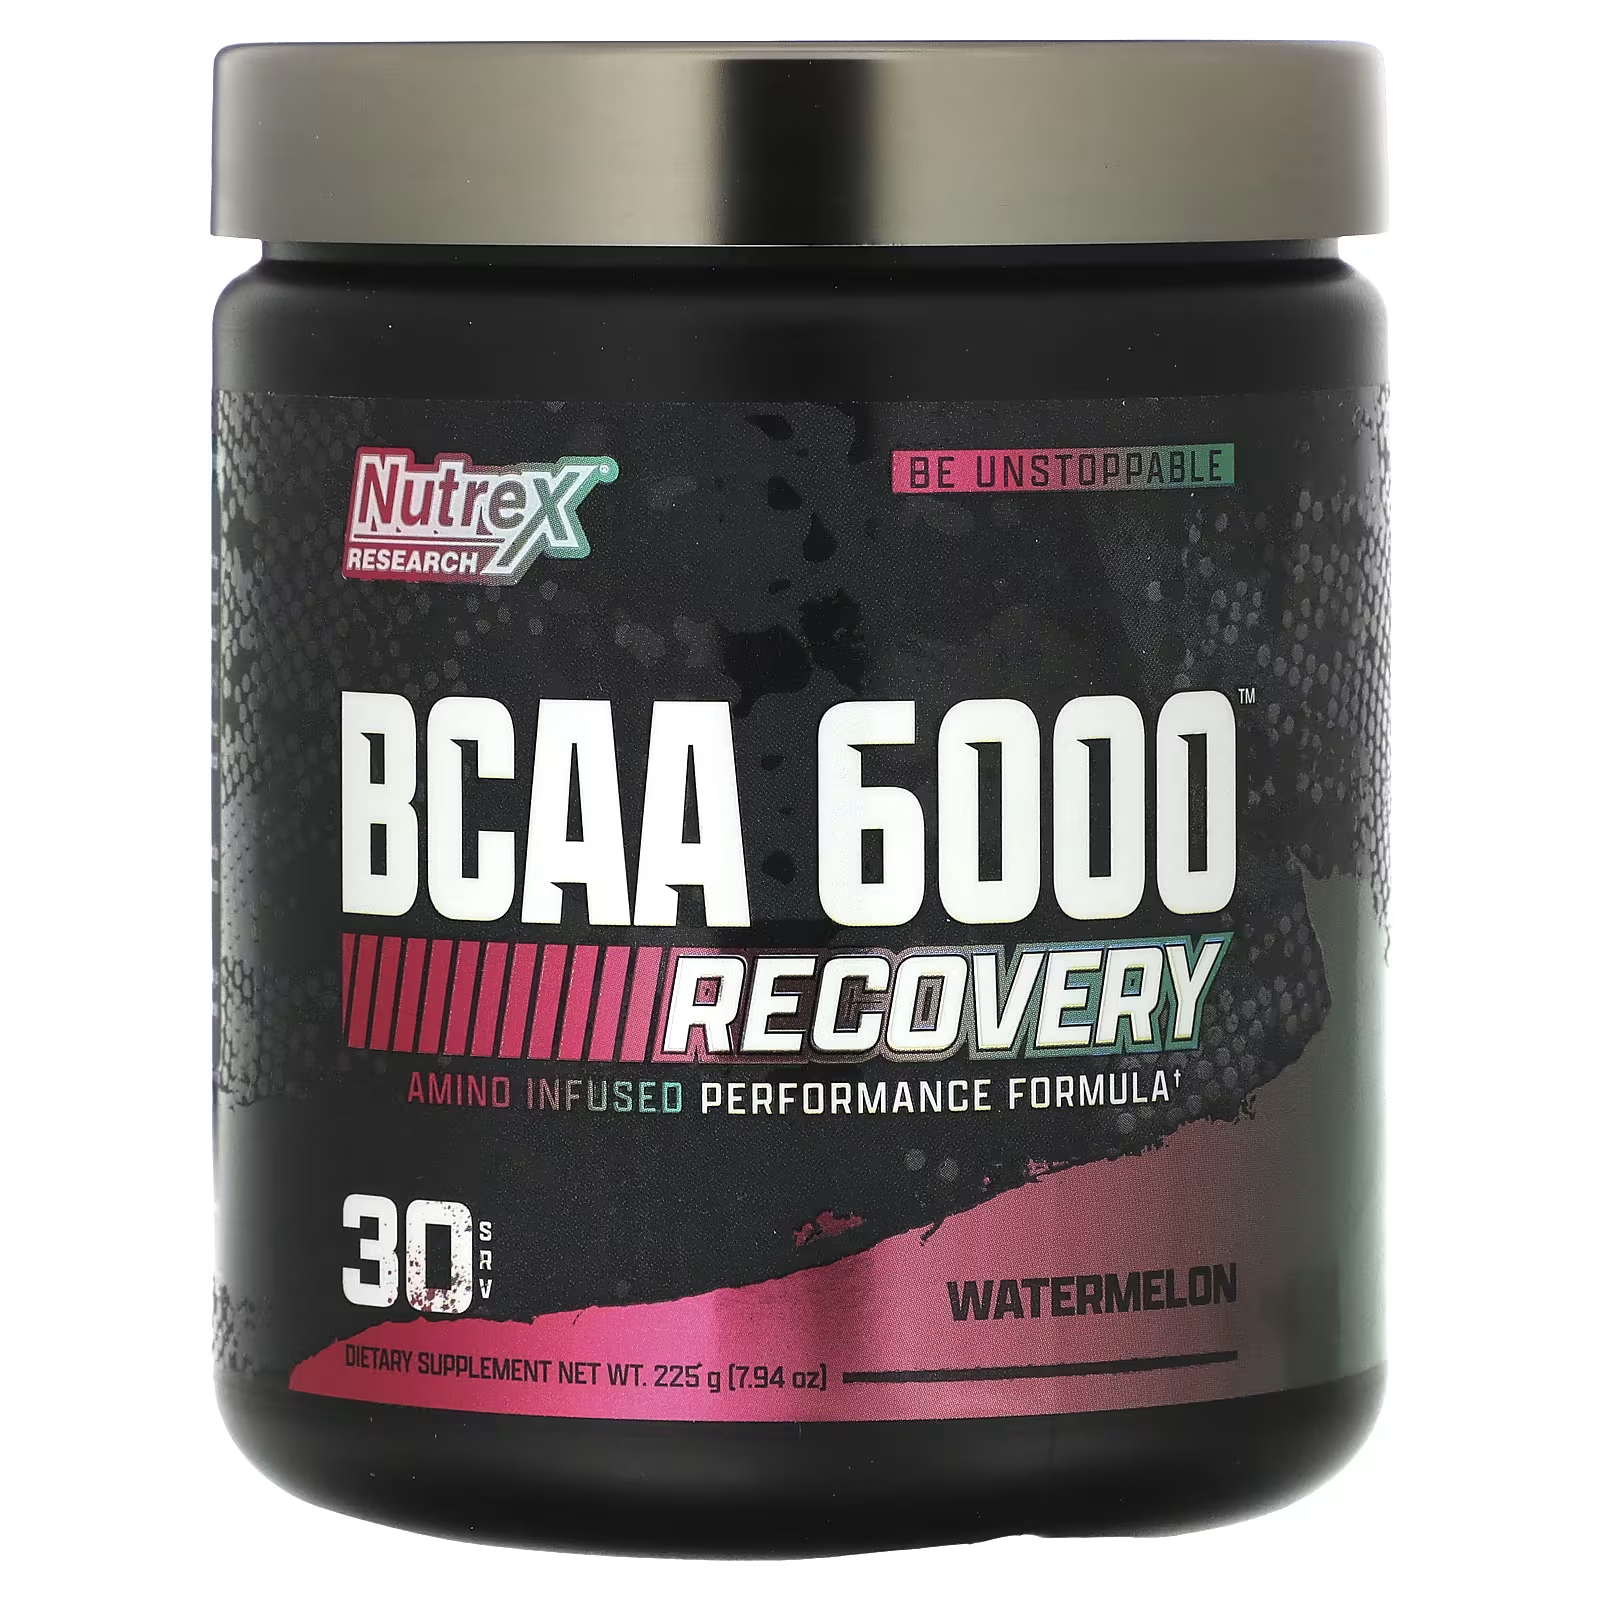 Пищевая добавка Nutrex Research BCAA 6000 Recovery арбуз, 225 г life extension аминокислоты с разветвленной цепью 90 капсул